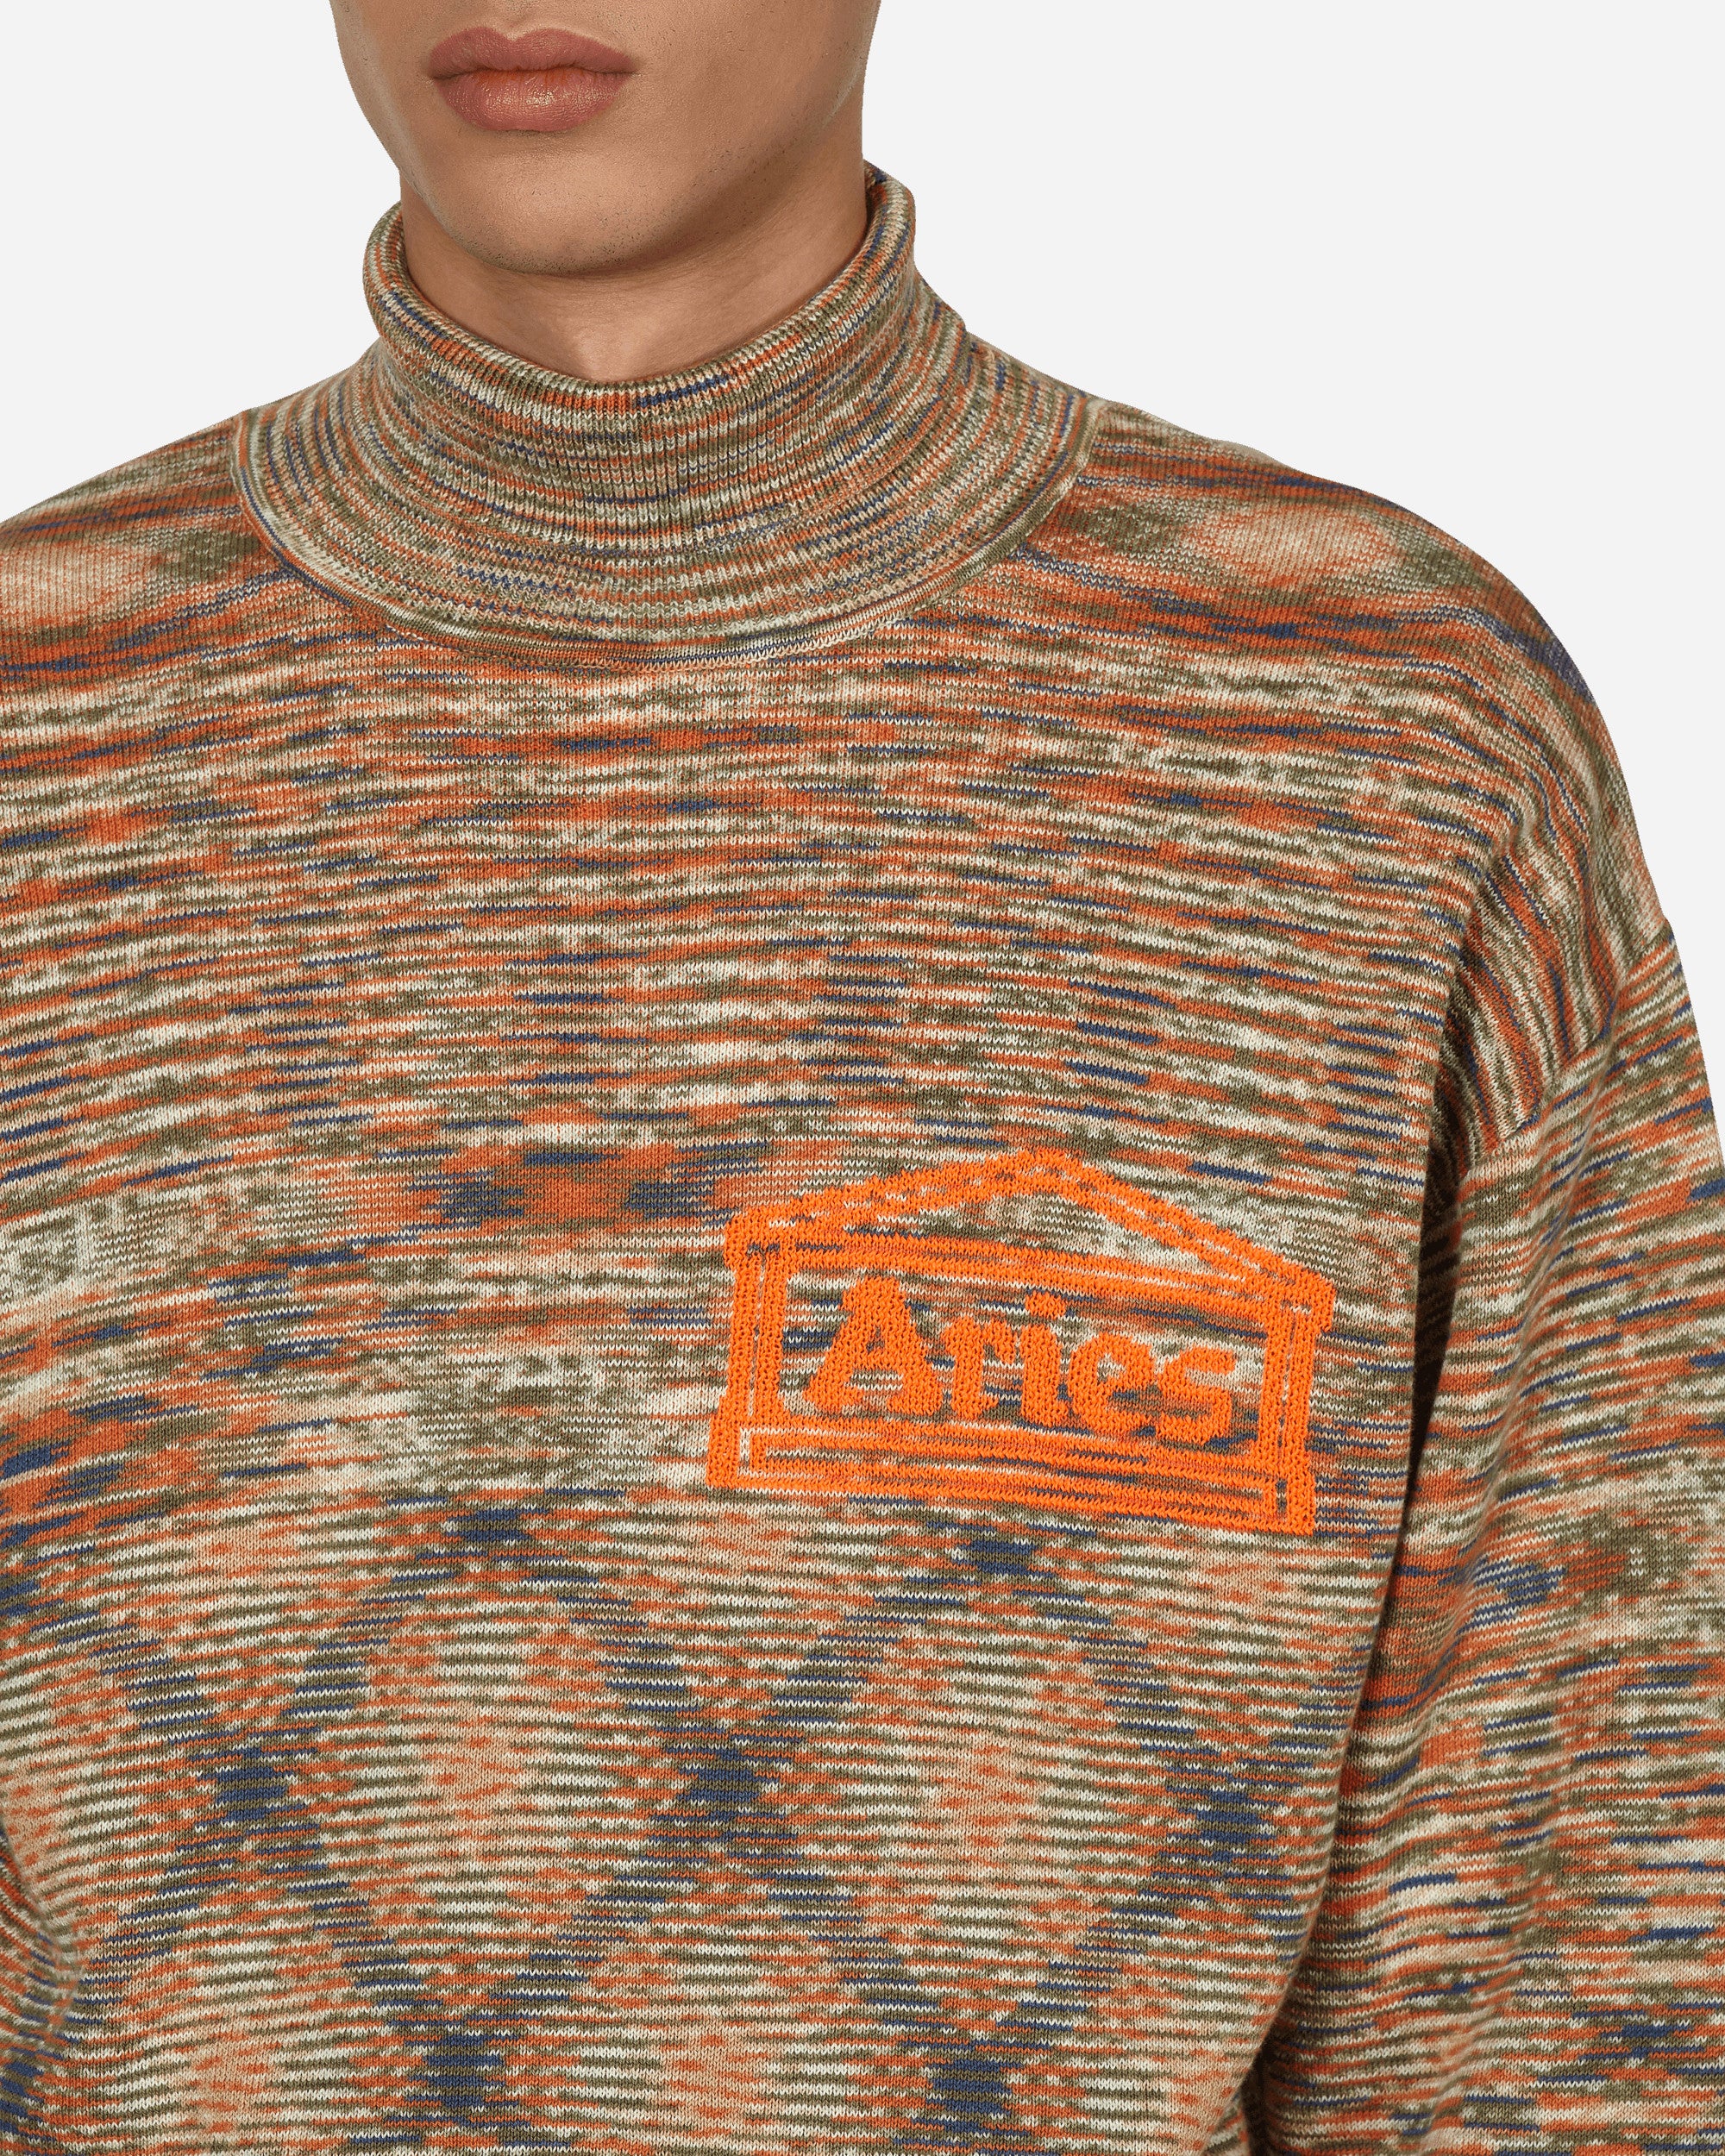 Aries Temple Space Dye Turtleneck Knit Multi Knitwears Sweaters FTAR20023 MLT